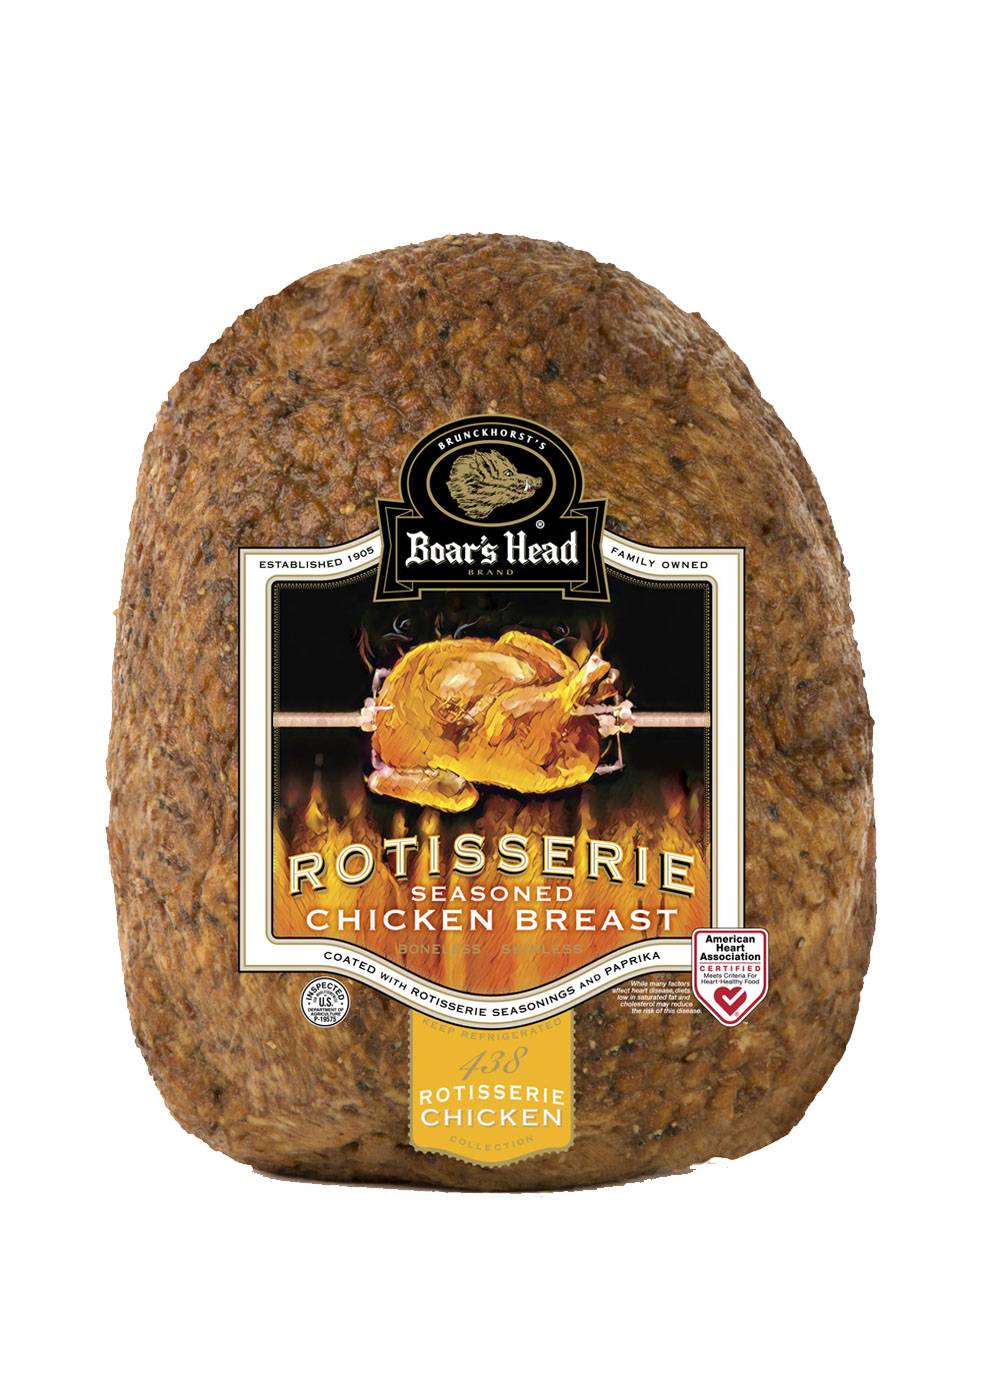 Boar's Head Rotisserie Seasoned Chicken Breast; image 1 of 2